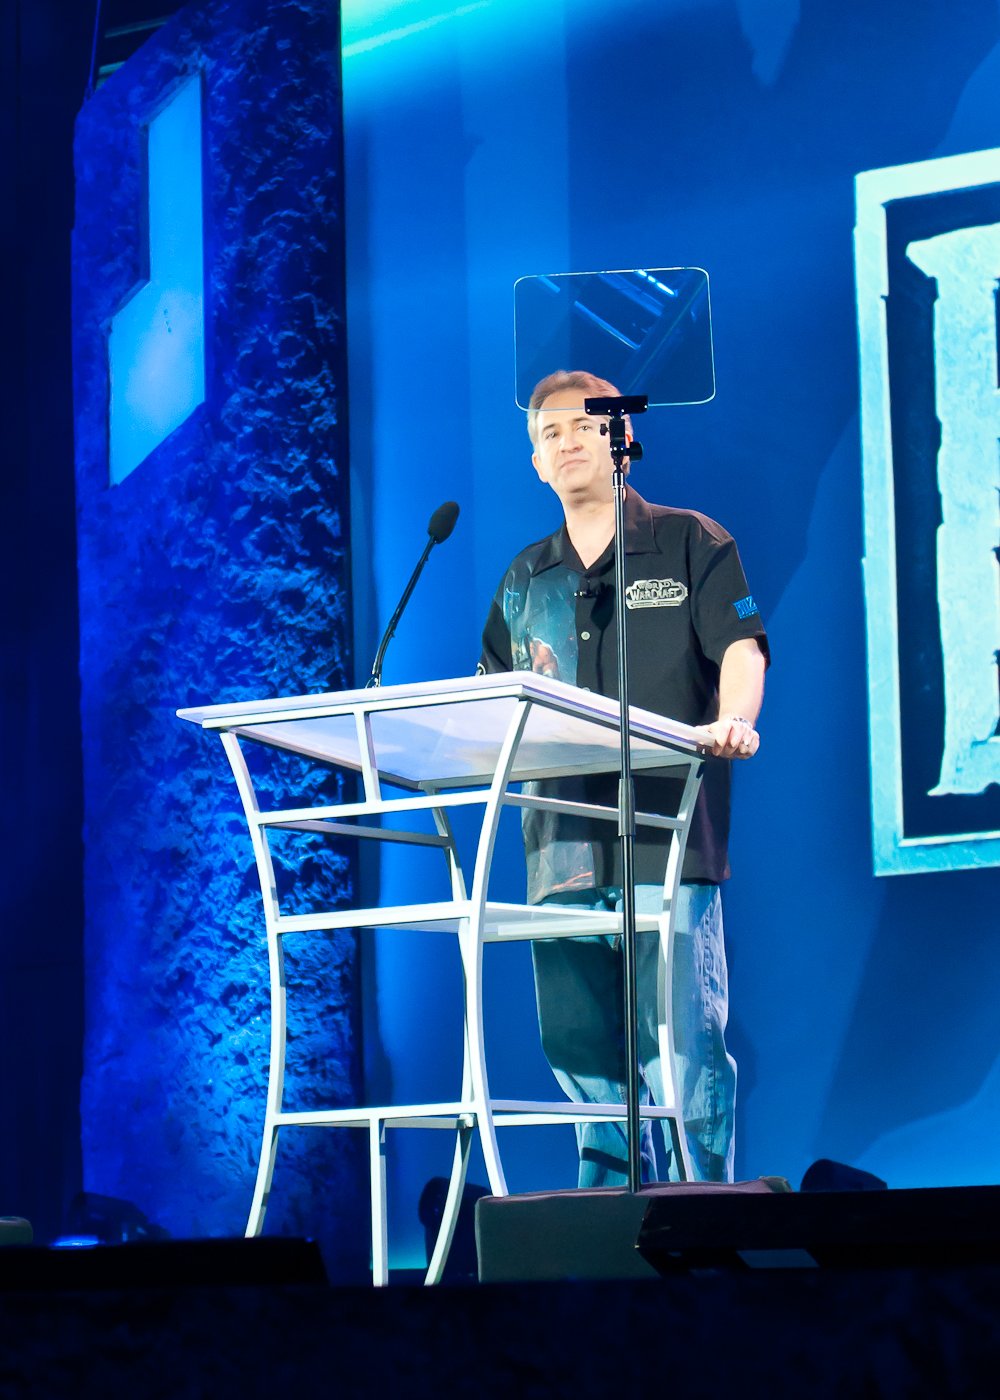 Поехали. Президент и сооснователь Blizzard Entertainment Майкл Морхейм. Подглядывает в текст речи на прозрачном суфлере.